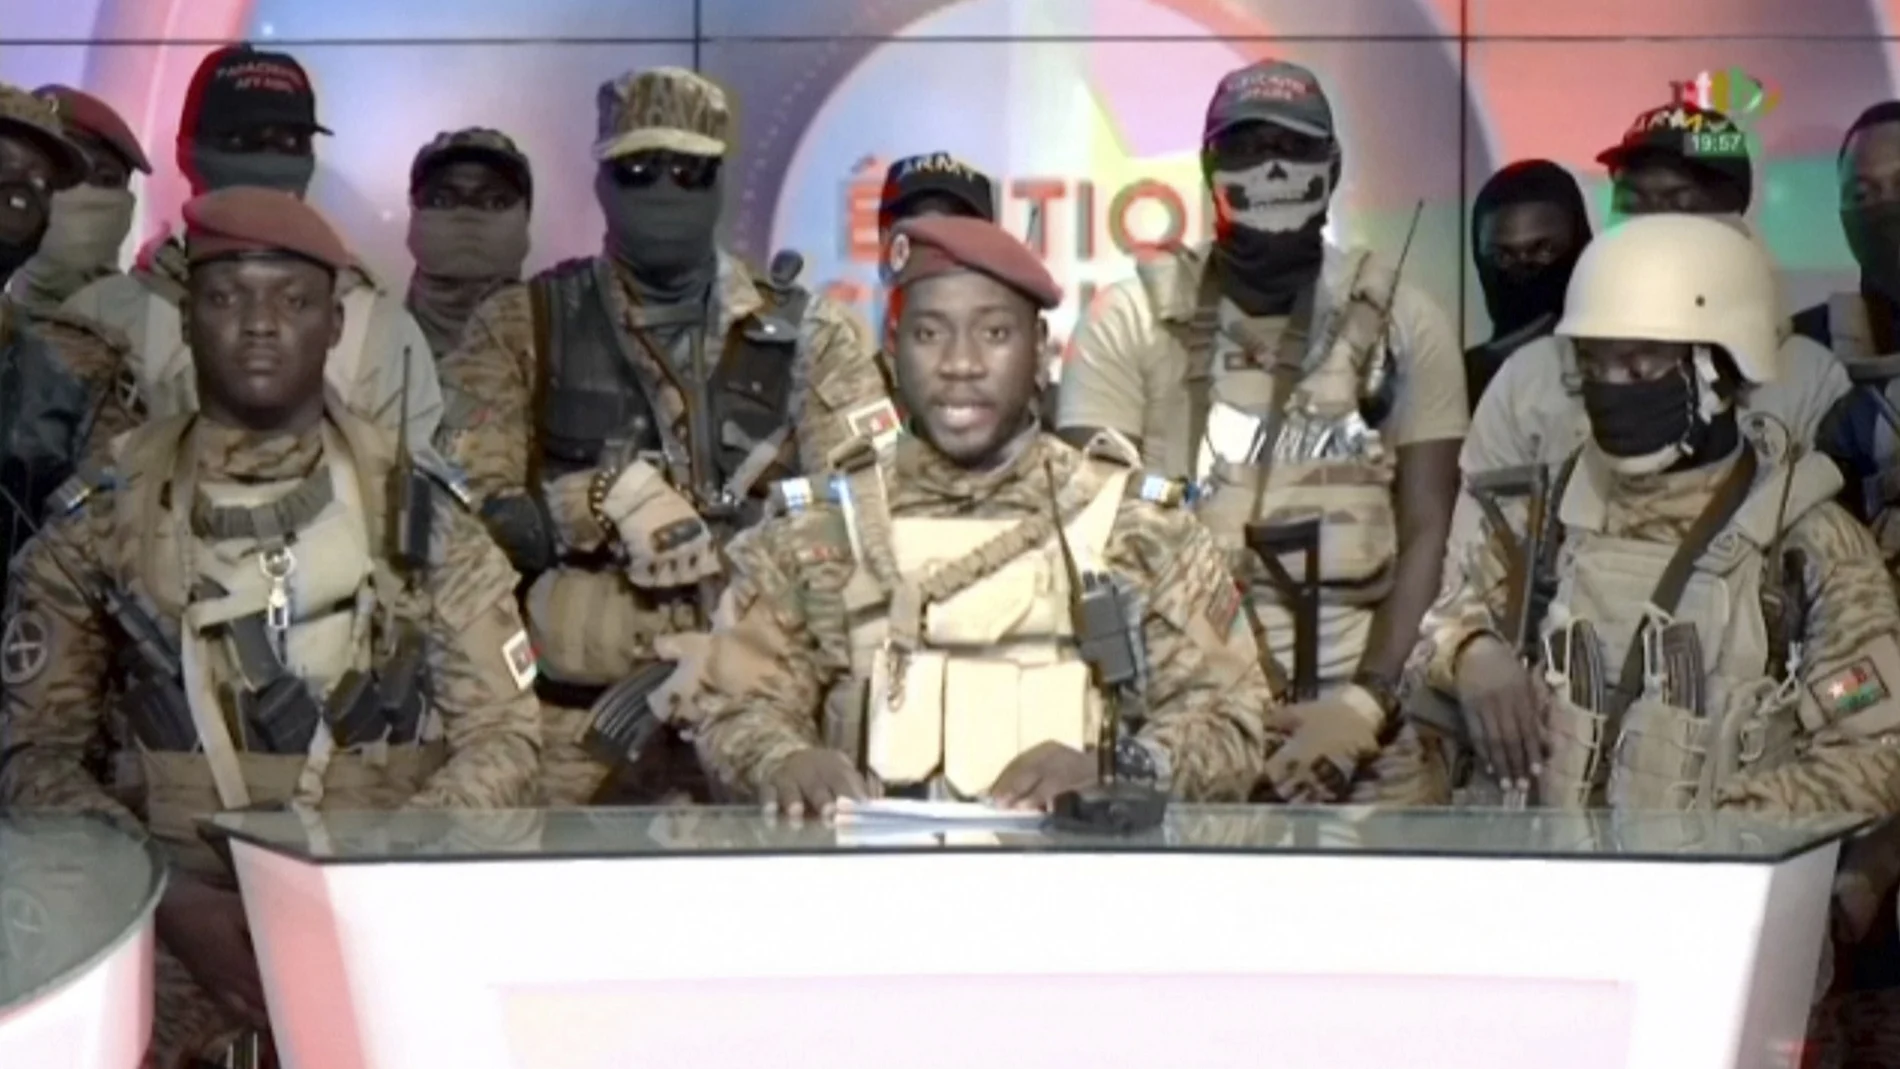 Ibrahim Traoré (con la boina roja a la izquierda) durante el discurso pronunciado en la televisión nacional en donde se anunció el éxito del golpe.